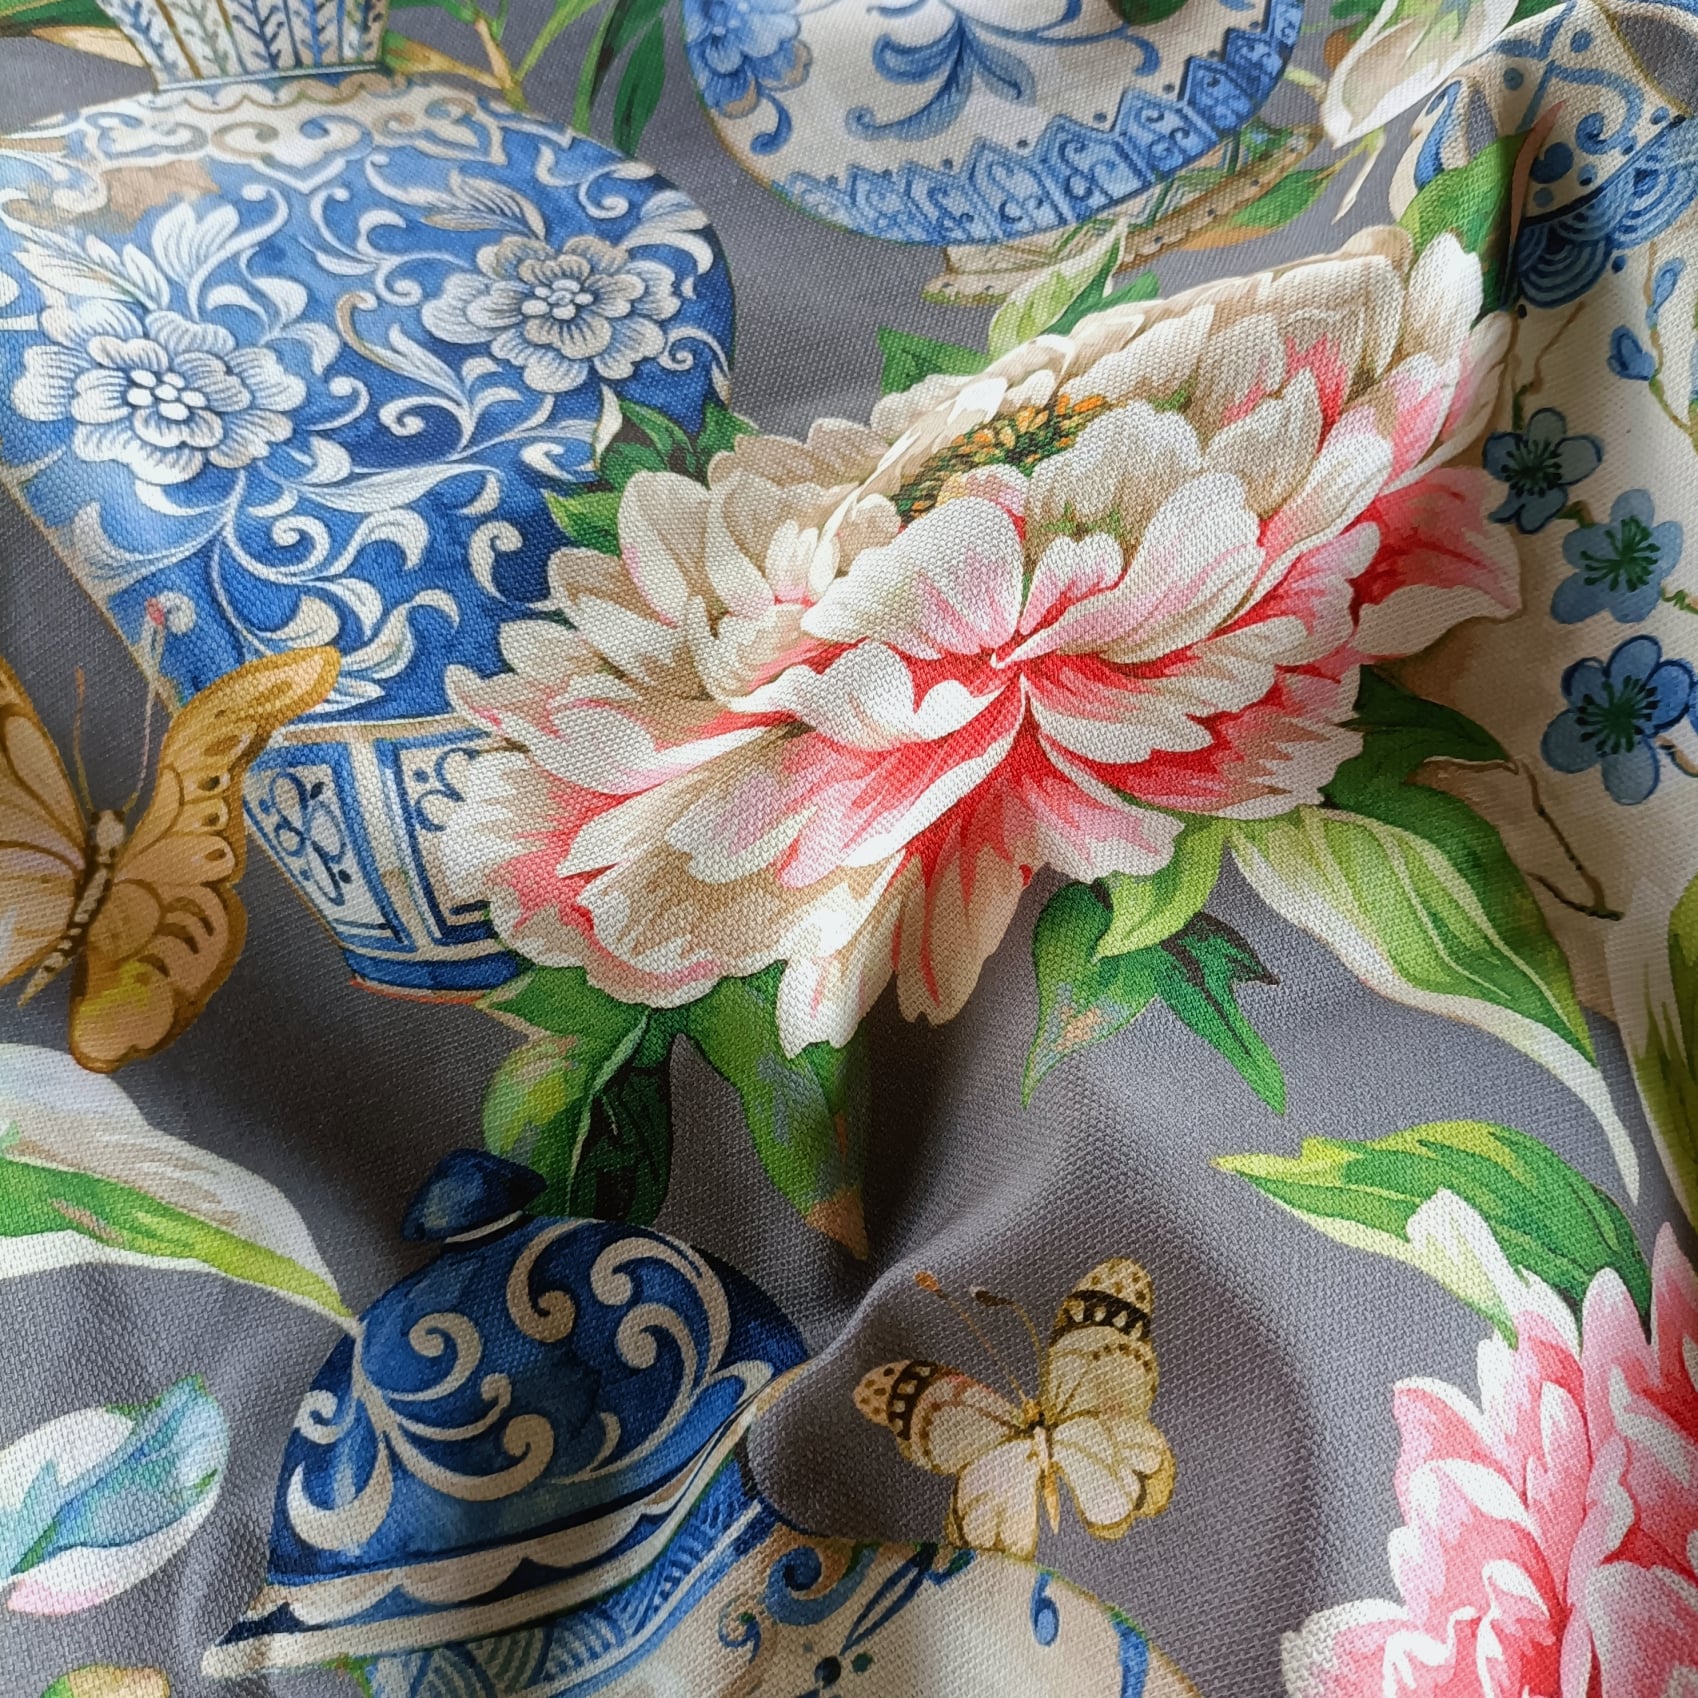 tessuto a fiori per arredamento contract per ristoranti e bar in cotone panama con motivo fiori e vasi sfondo bianco